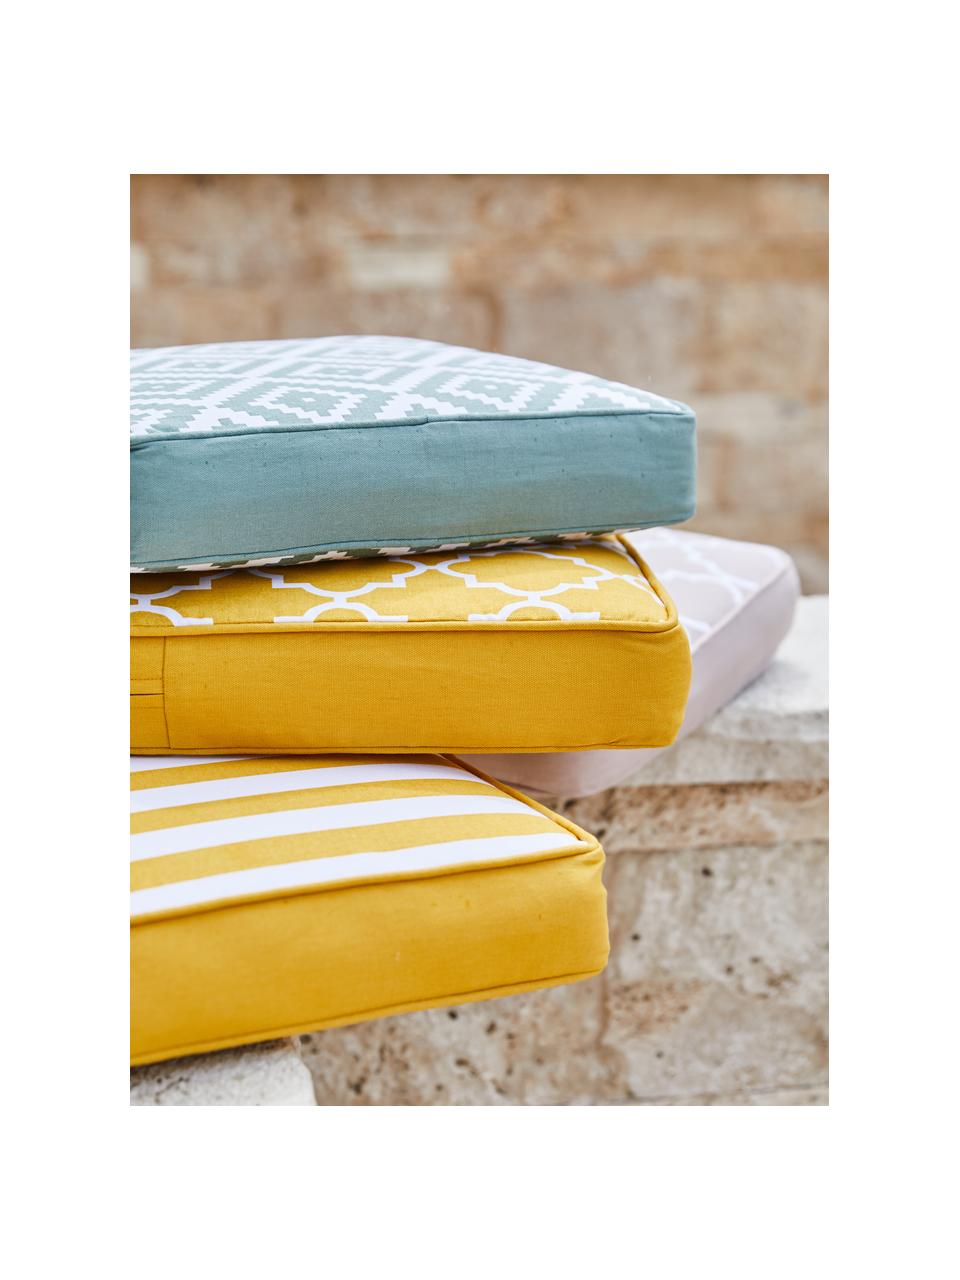 Hohes Sitzkissen Timon in Gelb/Weiß, gestreift, Bezug: 100% Baumwolle, Gelb, B 40 x L 40 cm